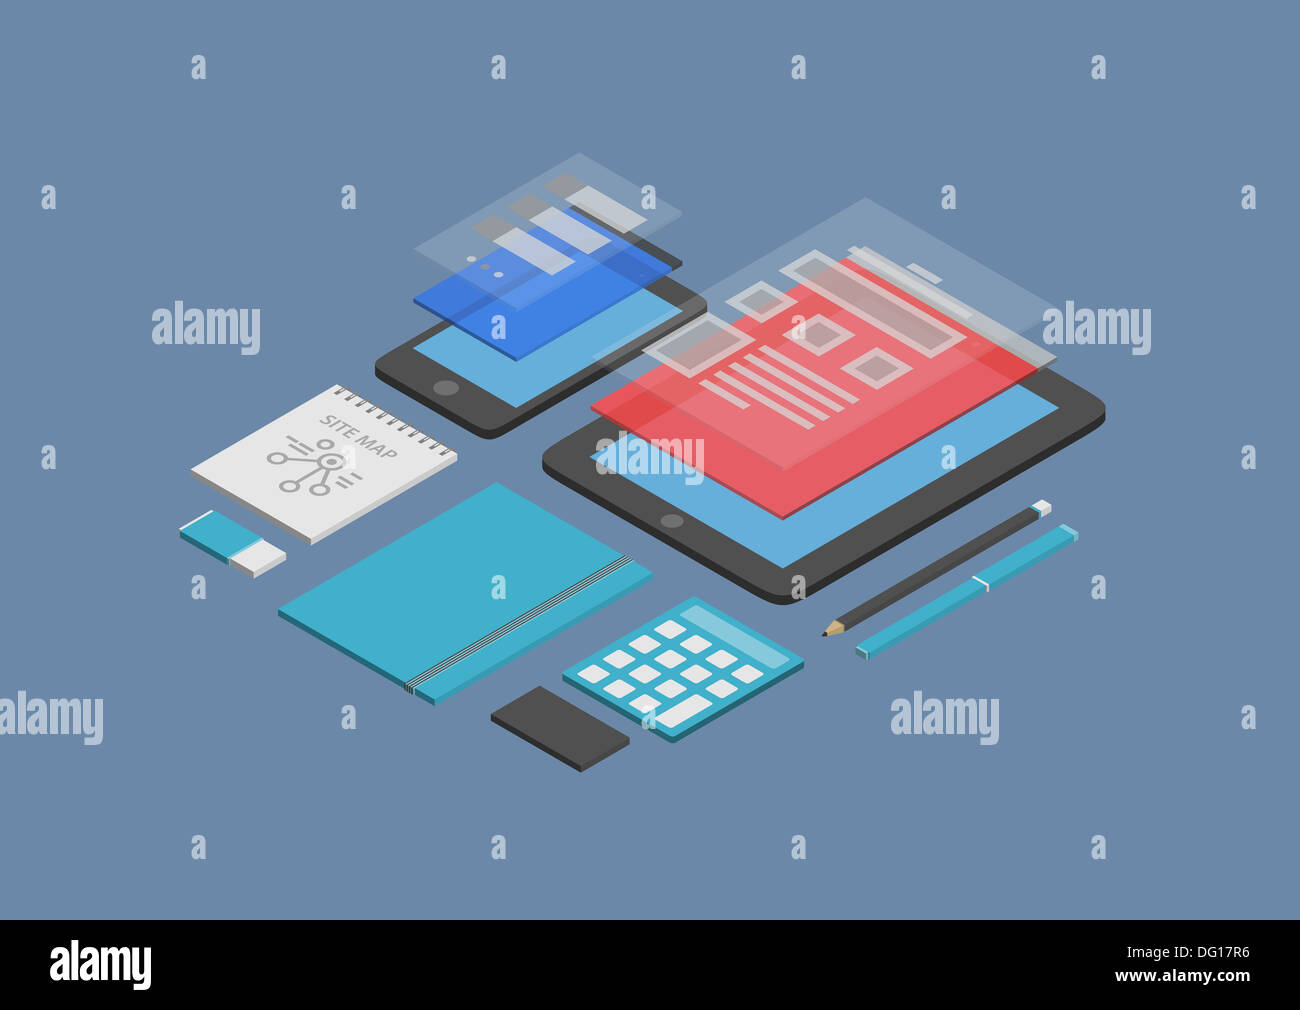 Modèle plat vector illustration isométrique concept de mobile web design et développement d'une interface utilisateur sur les appareils modernes. Banque D'Images